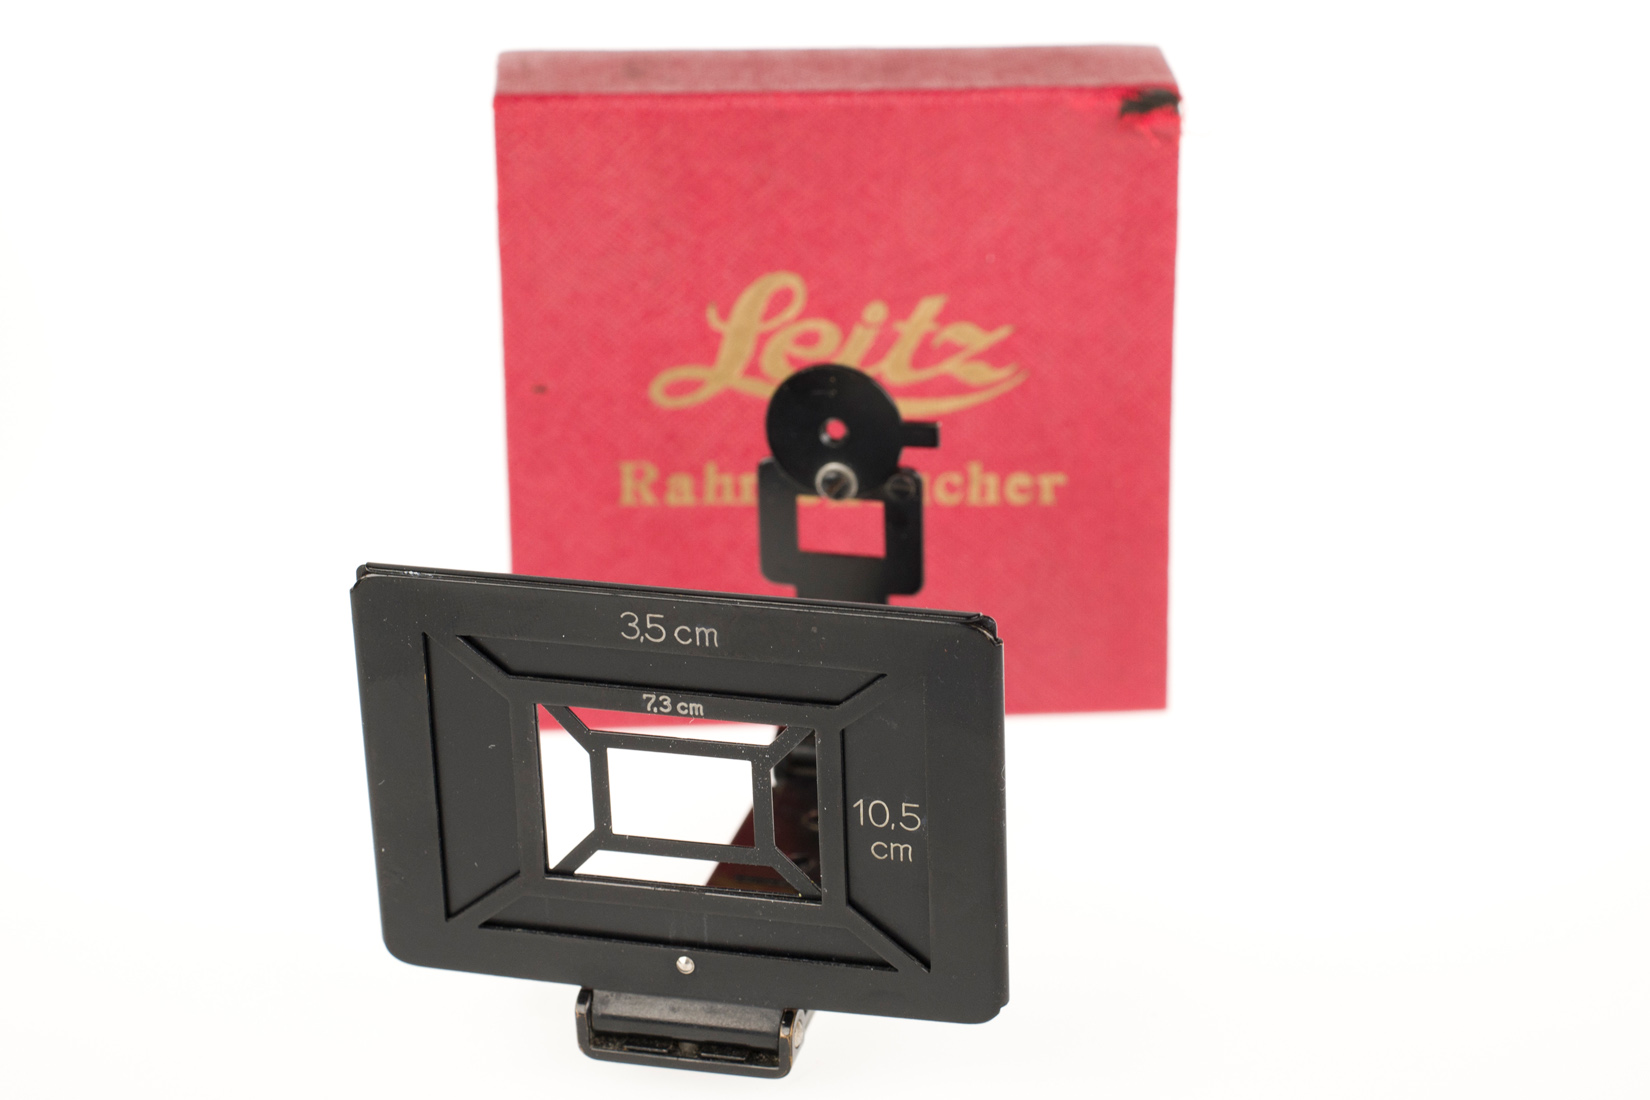 Leica RAMET Rahmensucher, schwarz